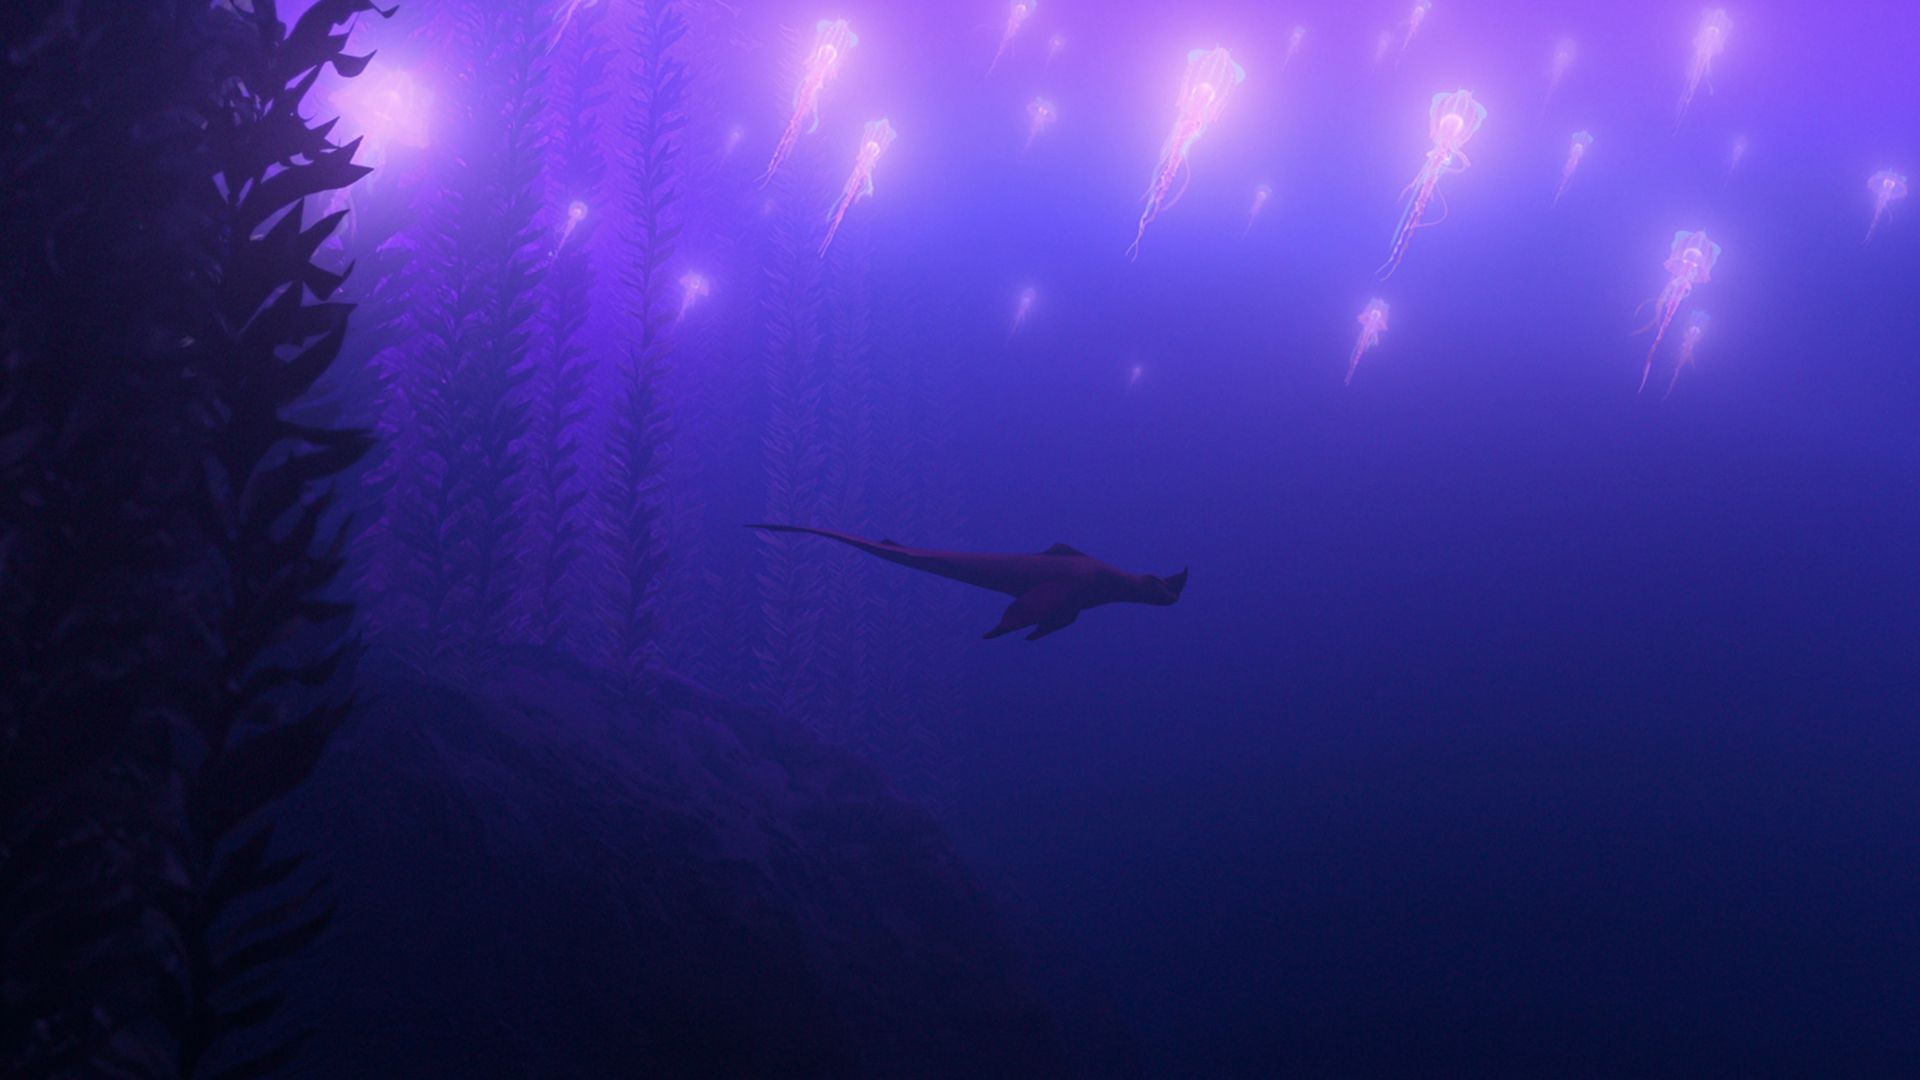 هیولای قرمز رنگ در حال حرکت در زیر آب در انیمیشن The Sea Beast